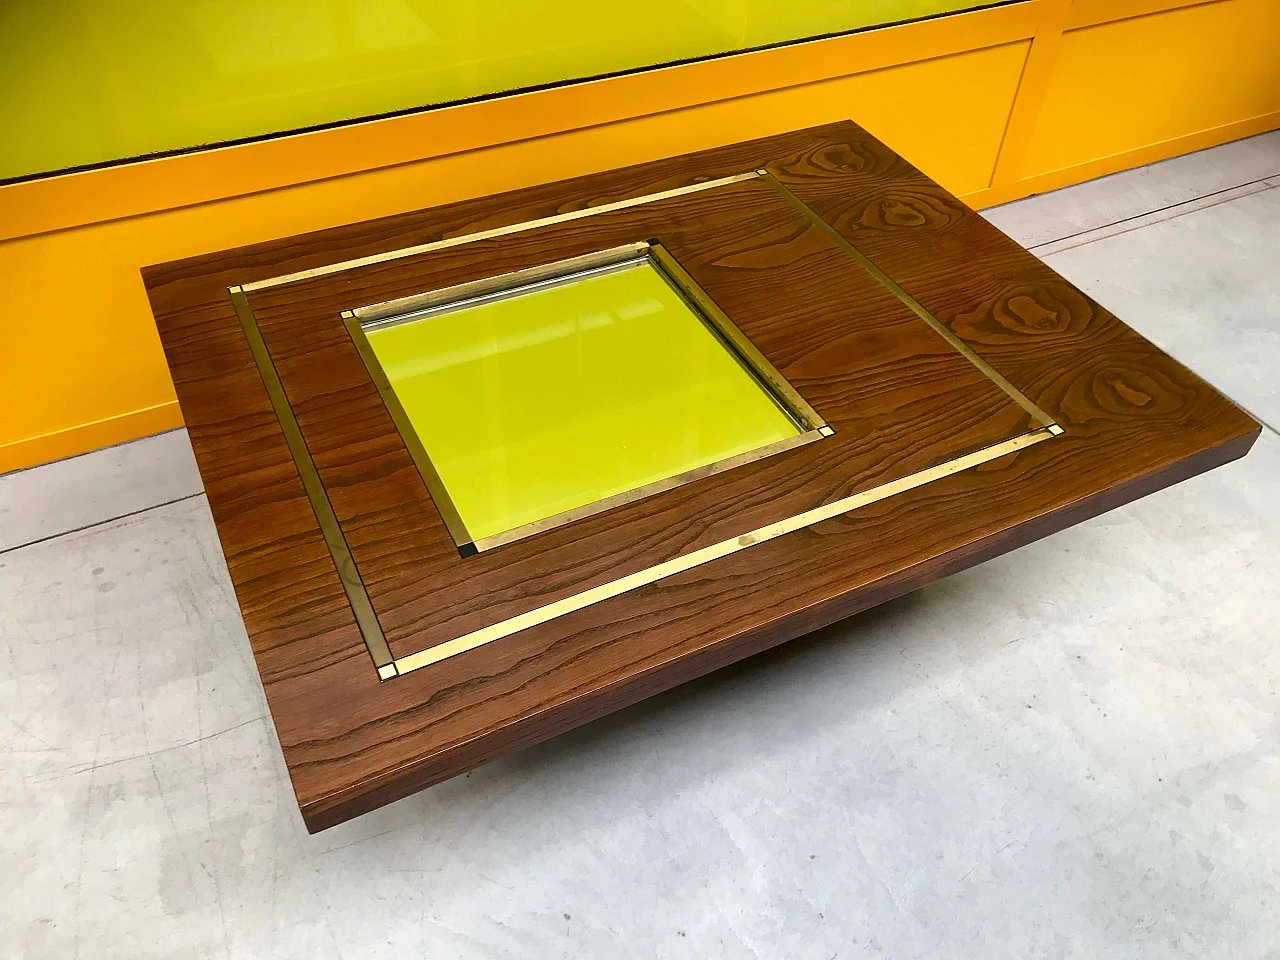 Tavolino da Caffè tipo Willy Rizzo in legno di rovere con specchio e profili di ottone, originale anni '60/'70 1226035